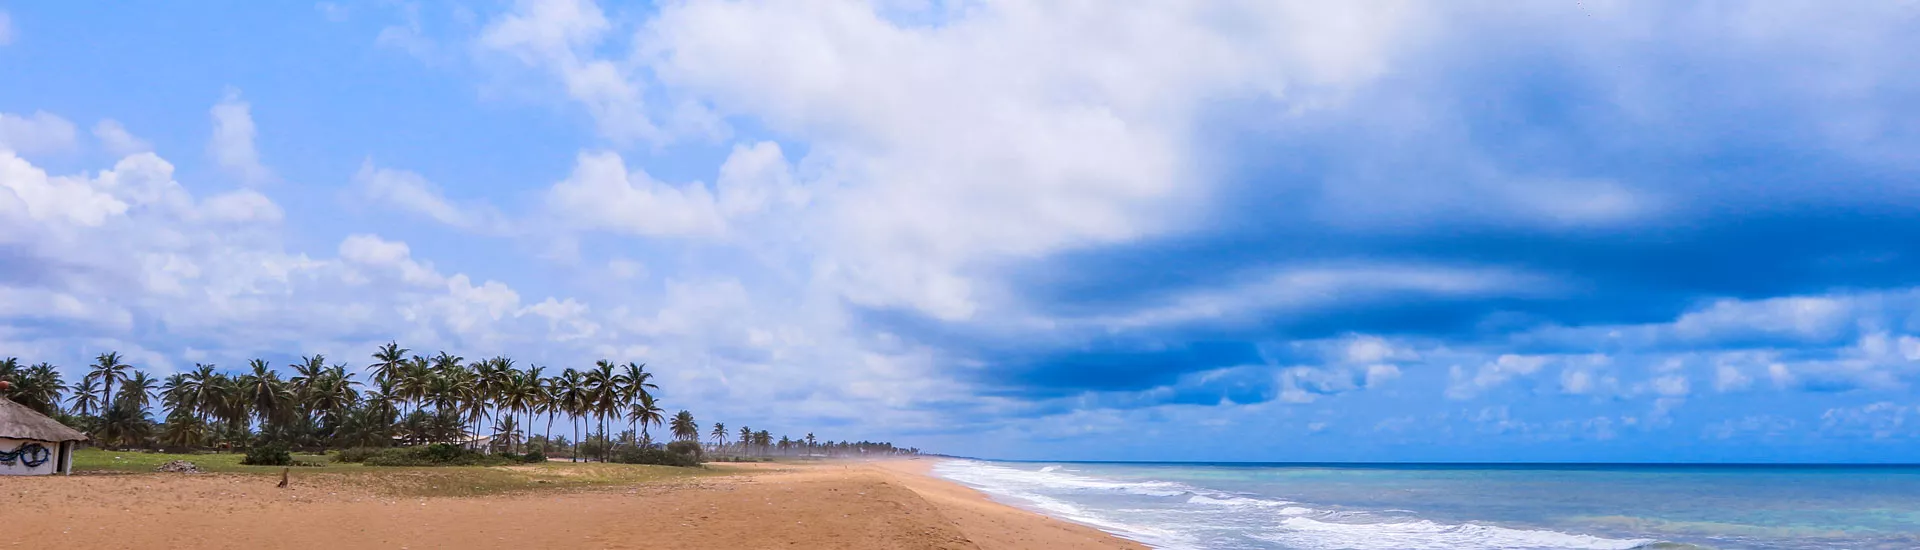 Am Strand von Ouidah